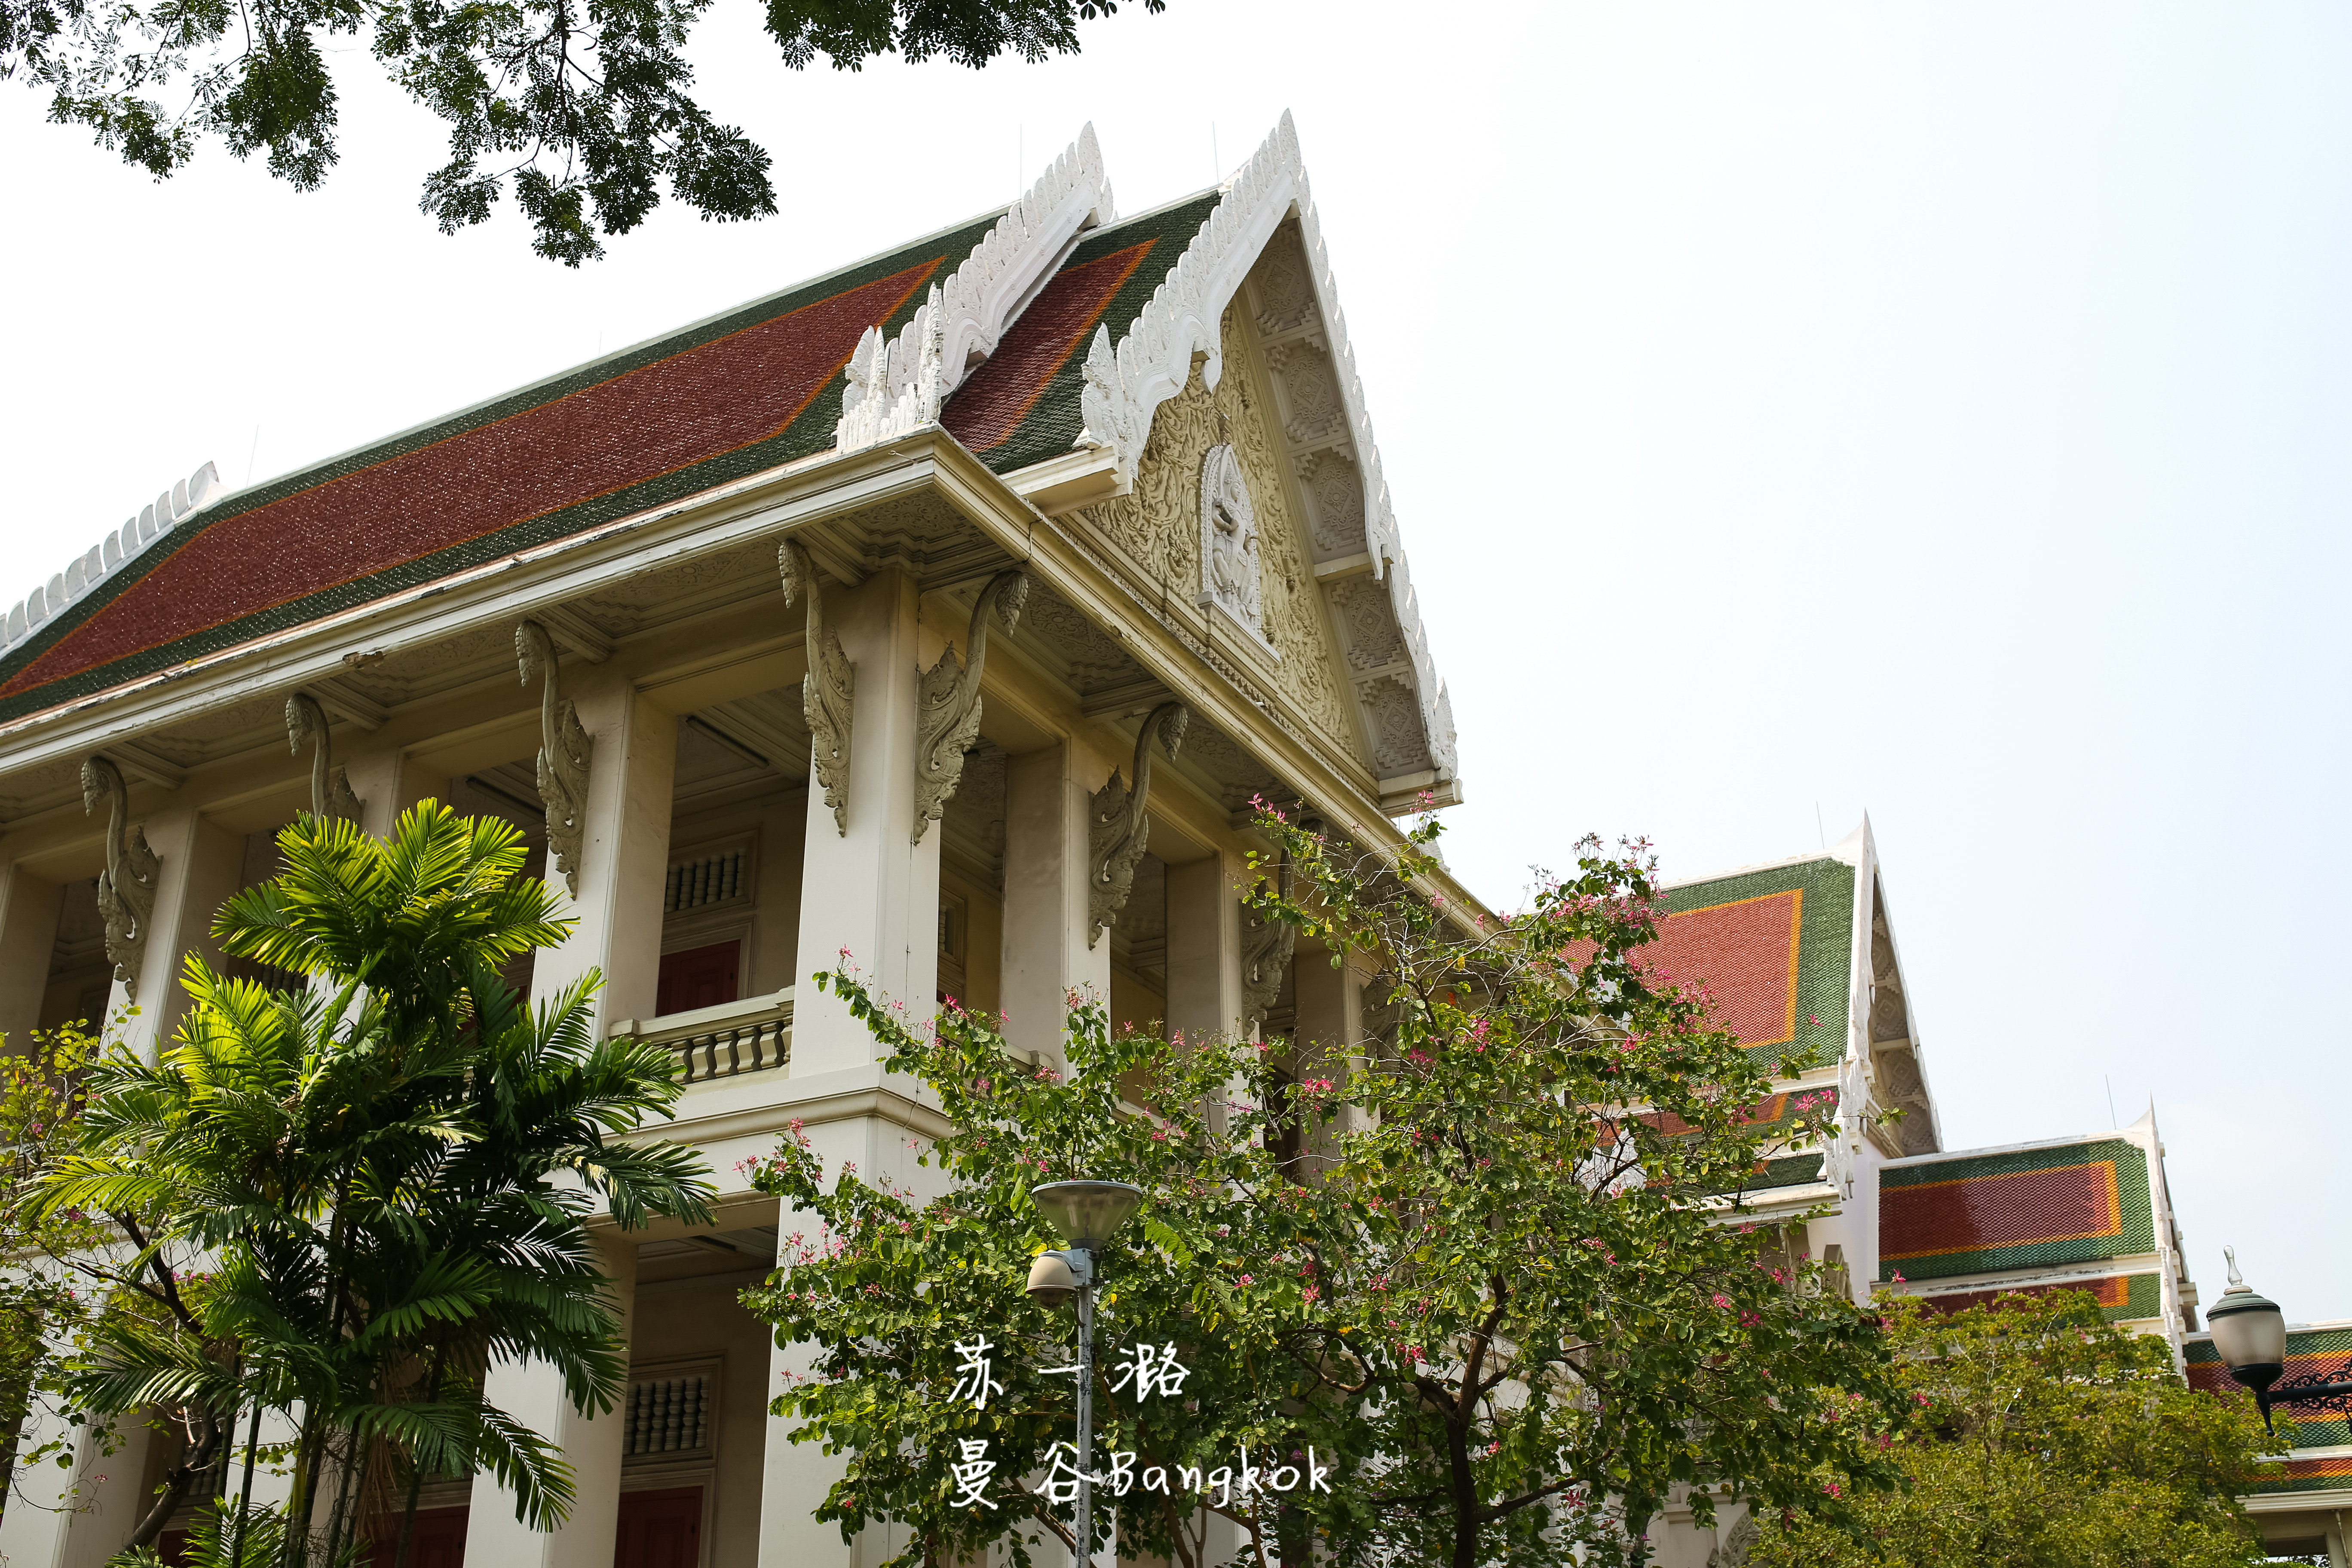 【携程攻略】曼谷朱拉隆功大学景点,这所大学是泰国第一所大学,也是一